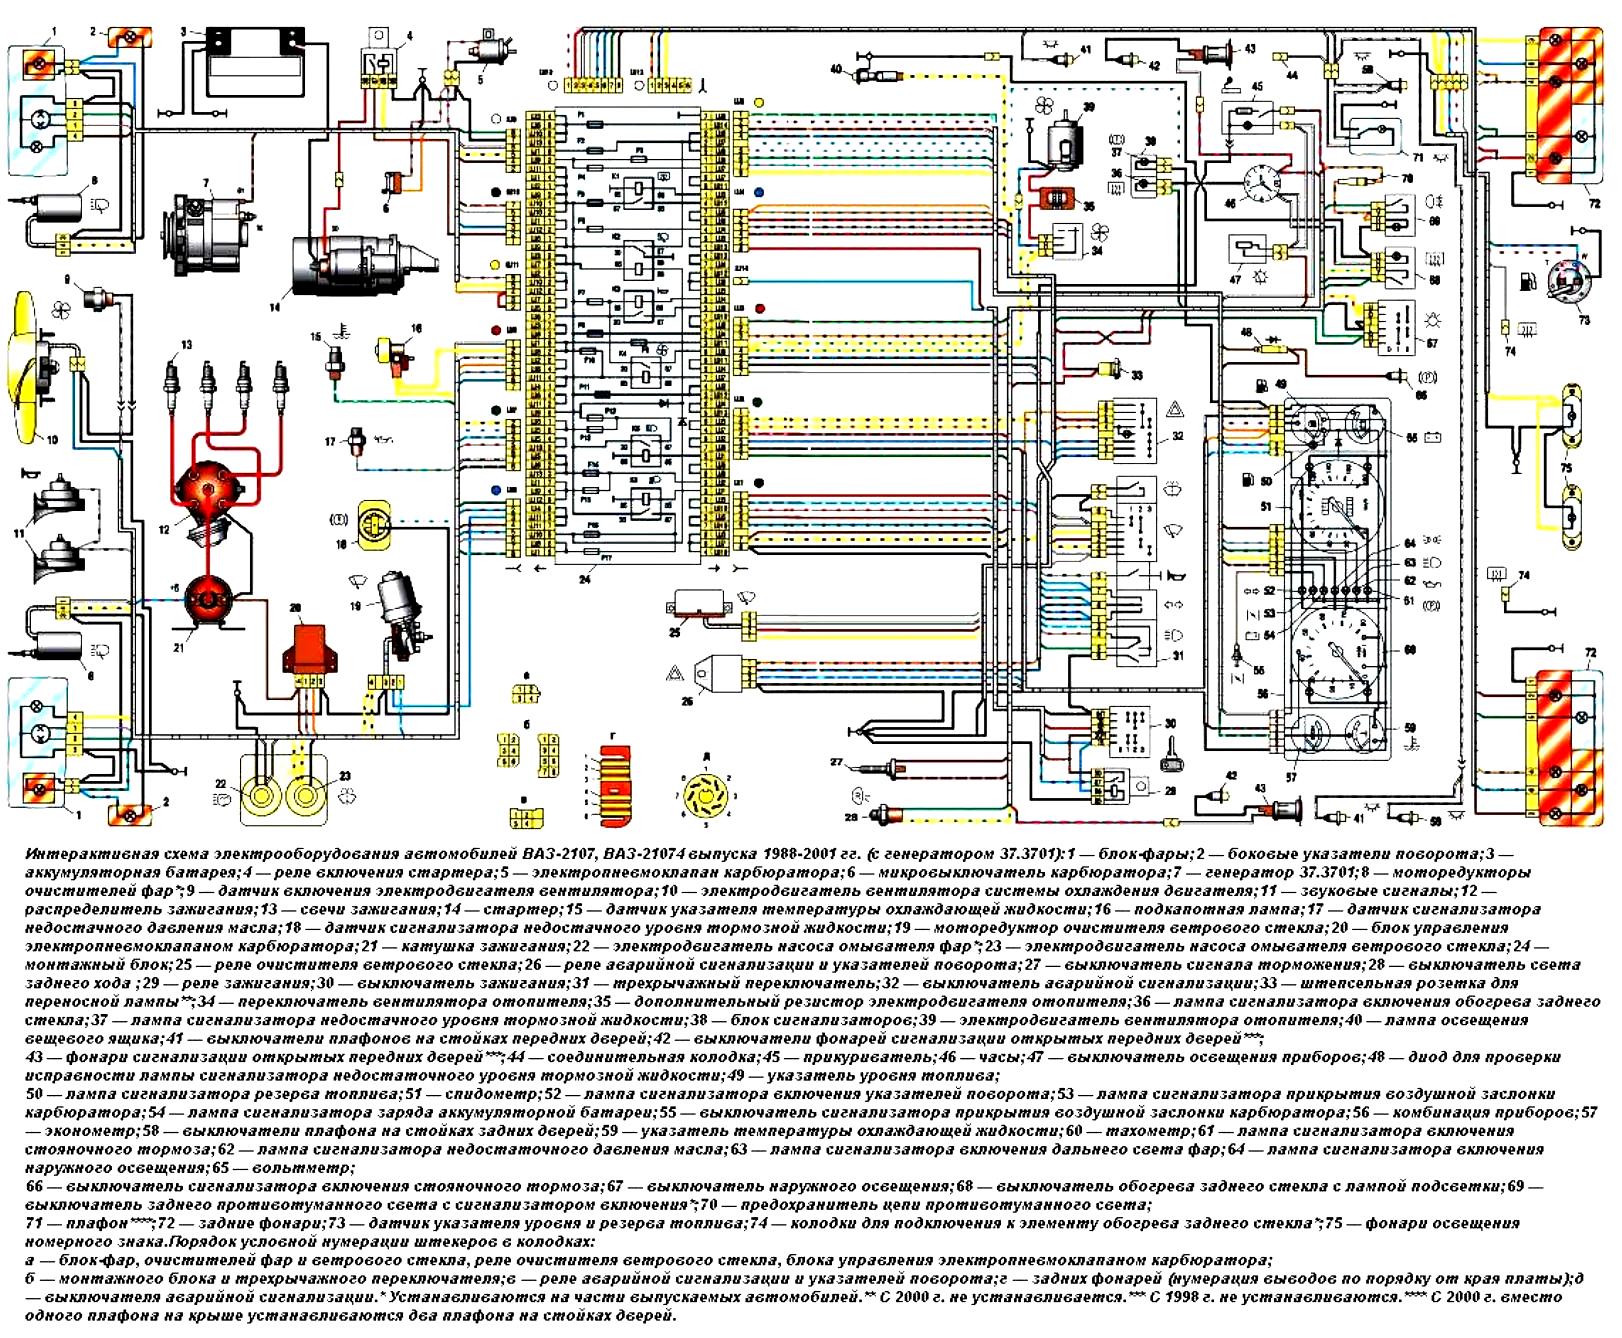 схема электрооборудования автомобилей ВАЗ-2107, ВАЗ-21074 выпуска 1988-2001 гг. (с генератором 37.3701)